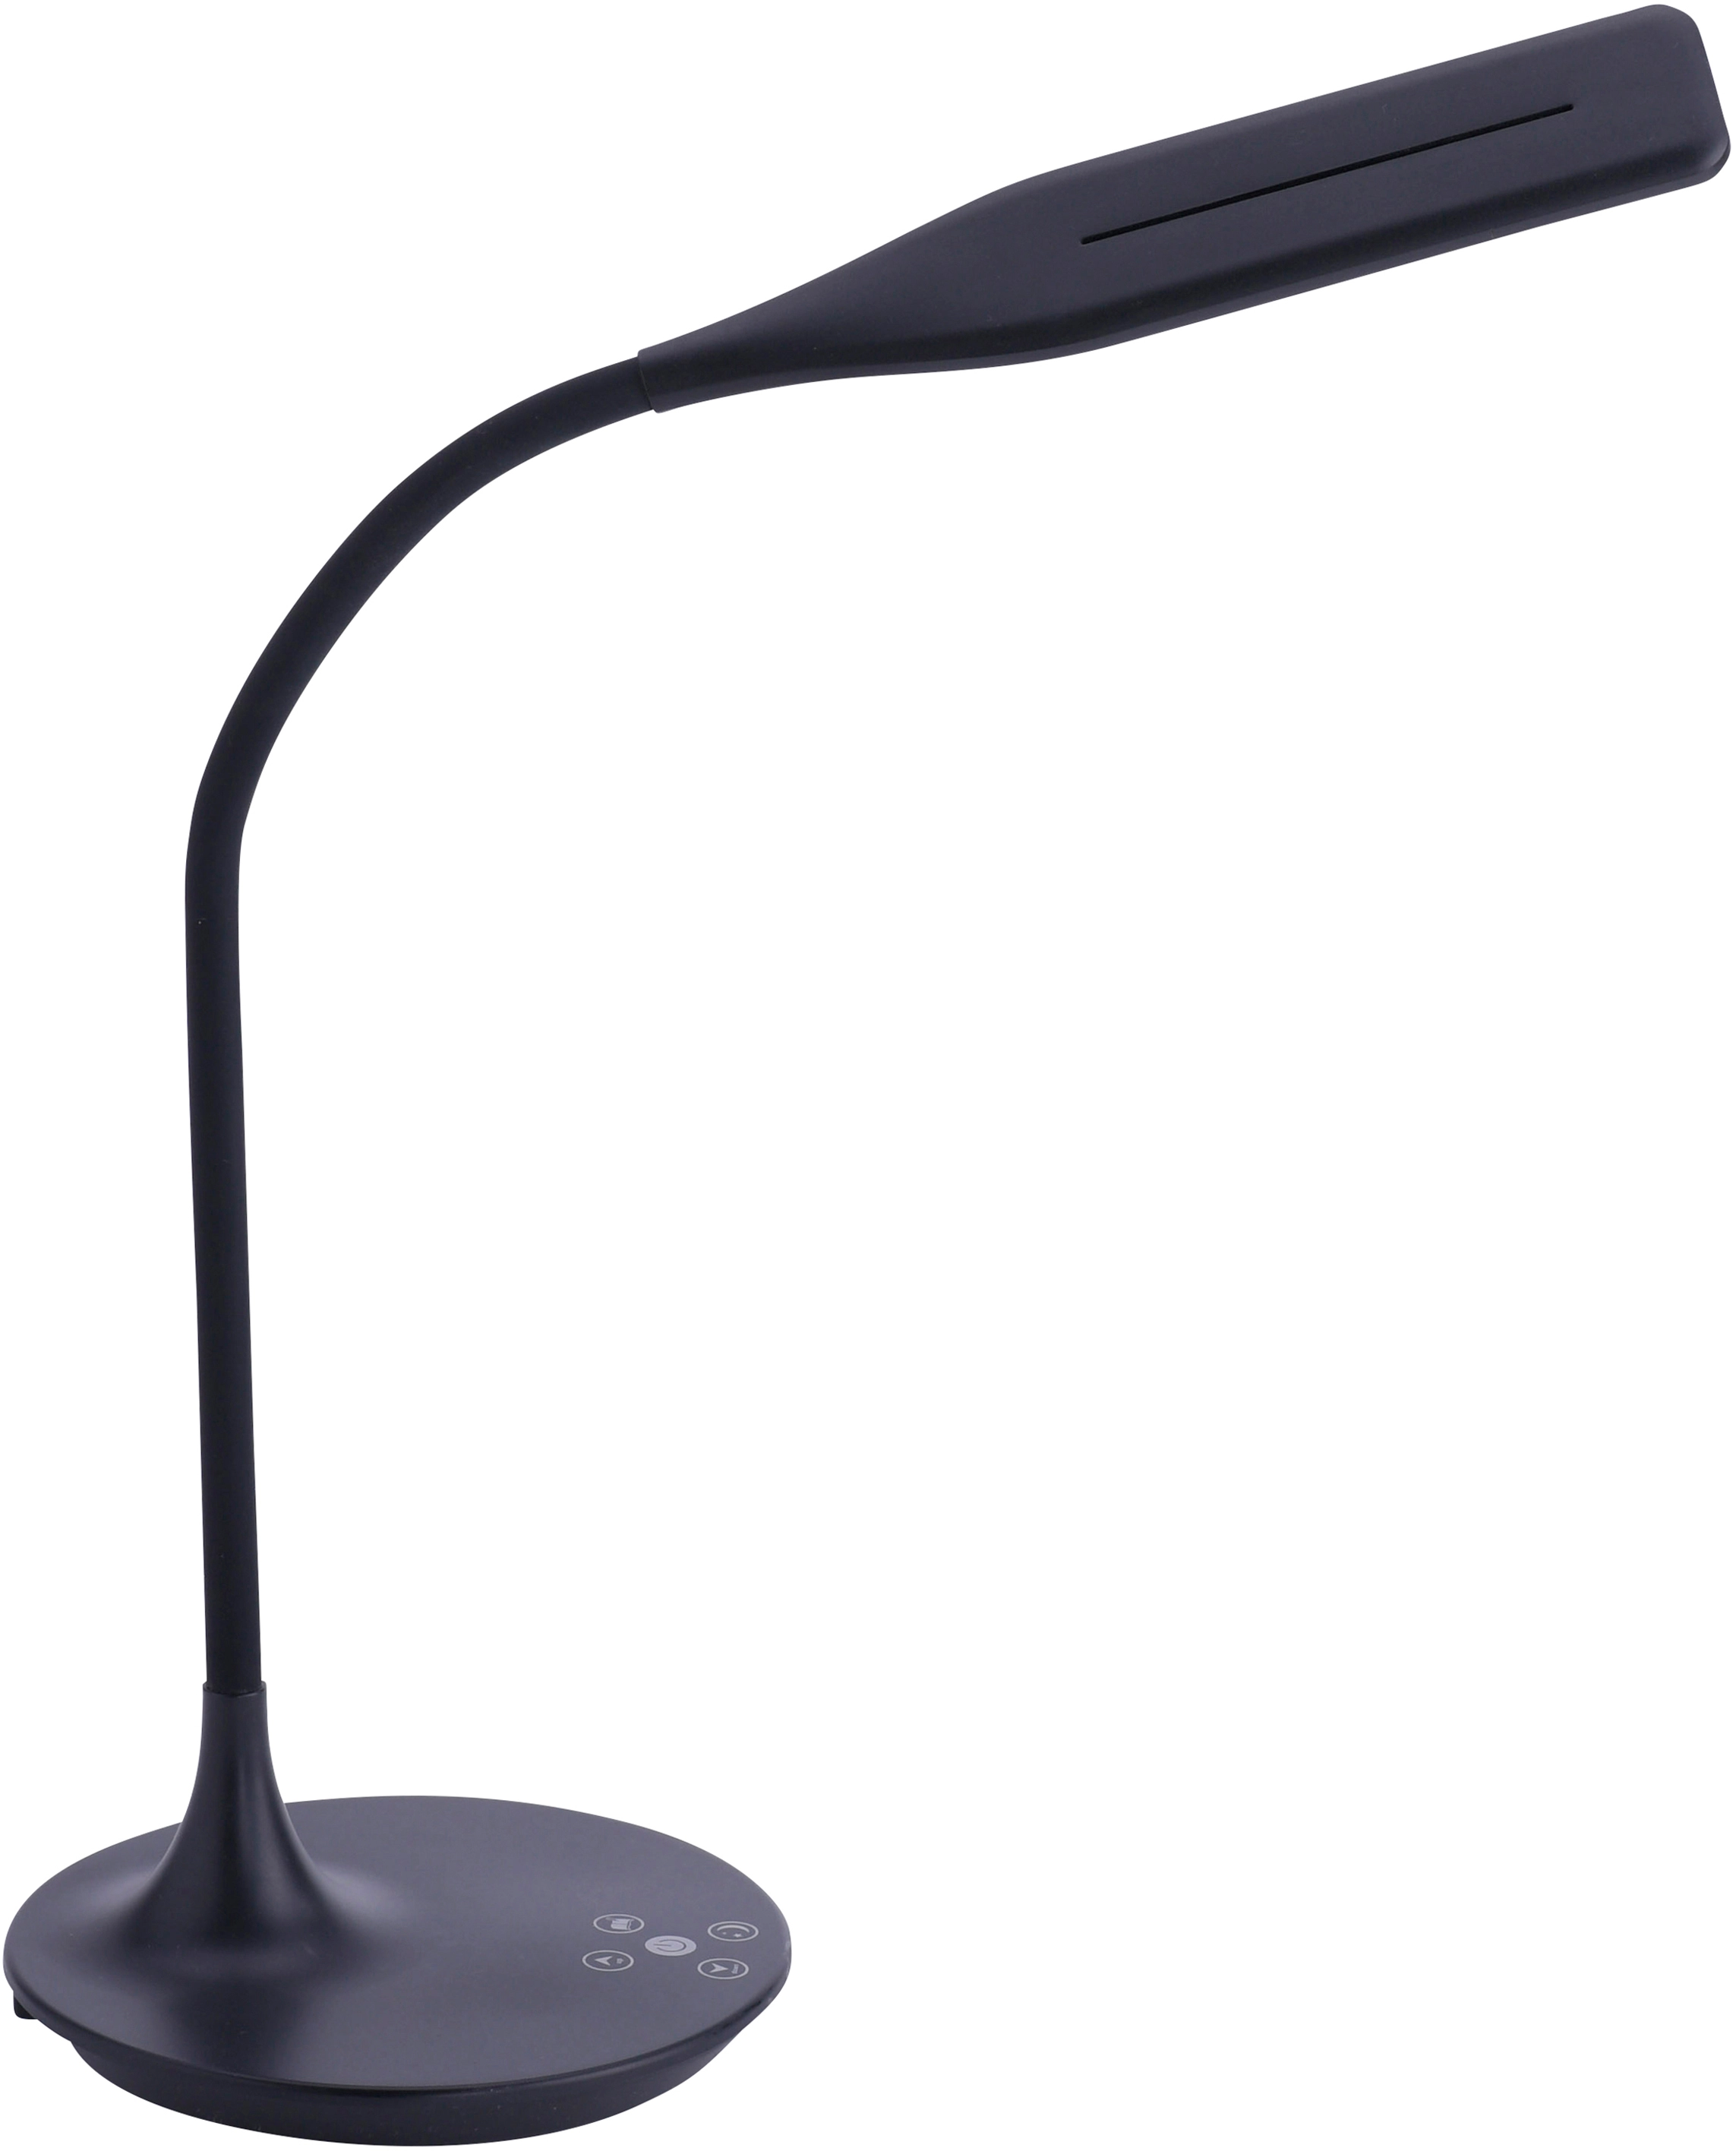 LED-Tischleuchte Rafael Schwarz 2700 - 6000 K kaufen bei OBI